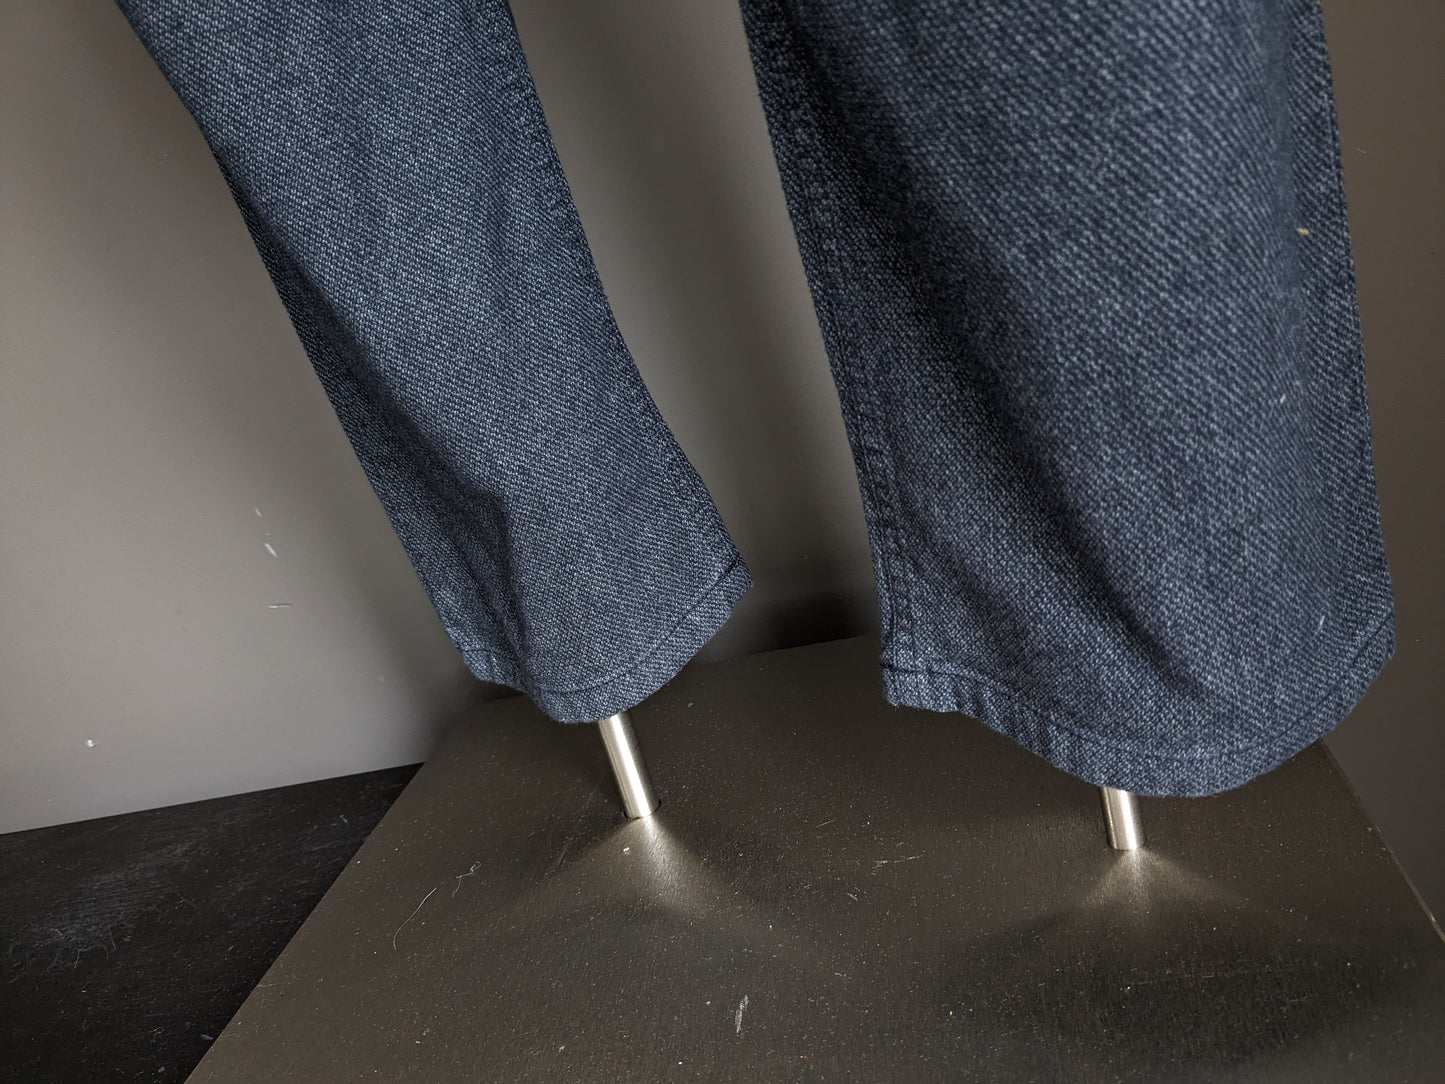 Gardeur pants / trousers. Blue gray mixed. Modern fit. Size 34 - L34.